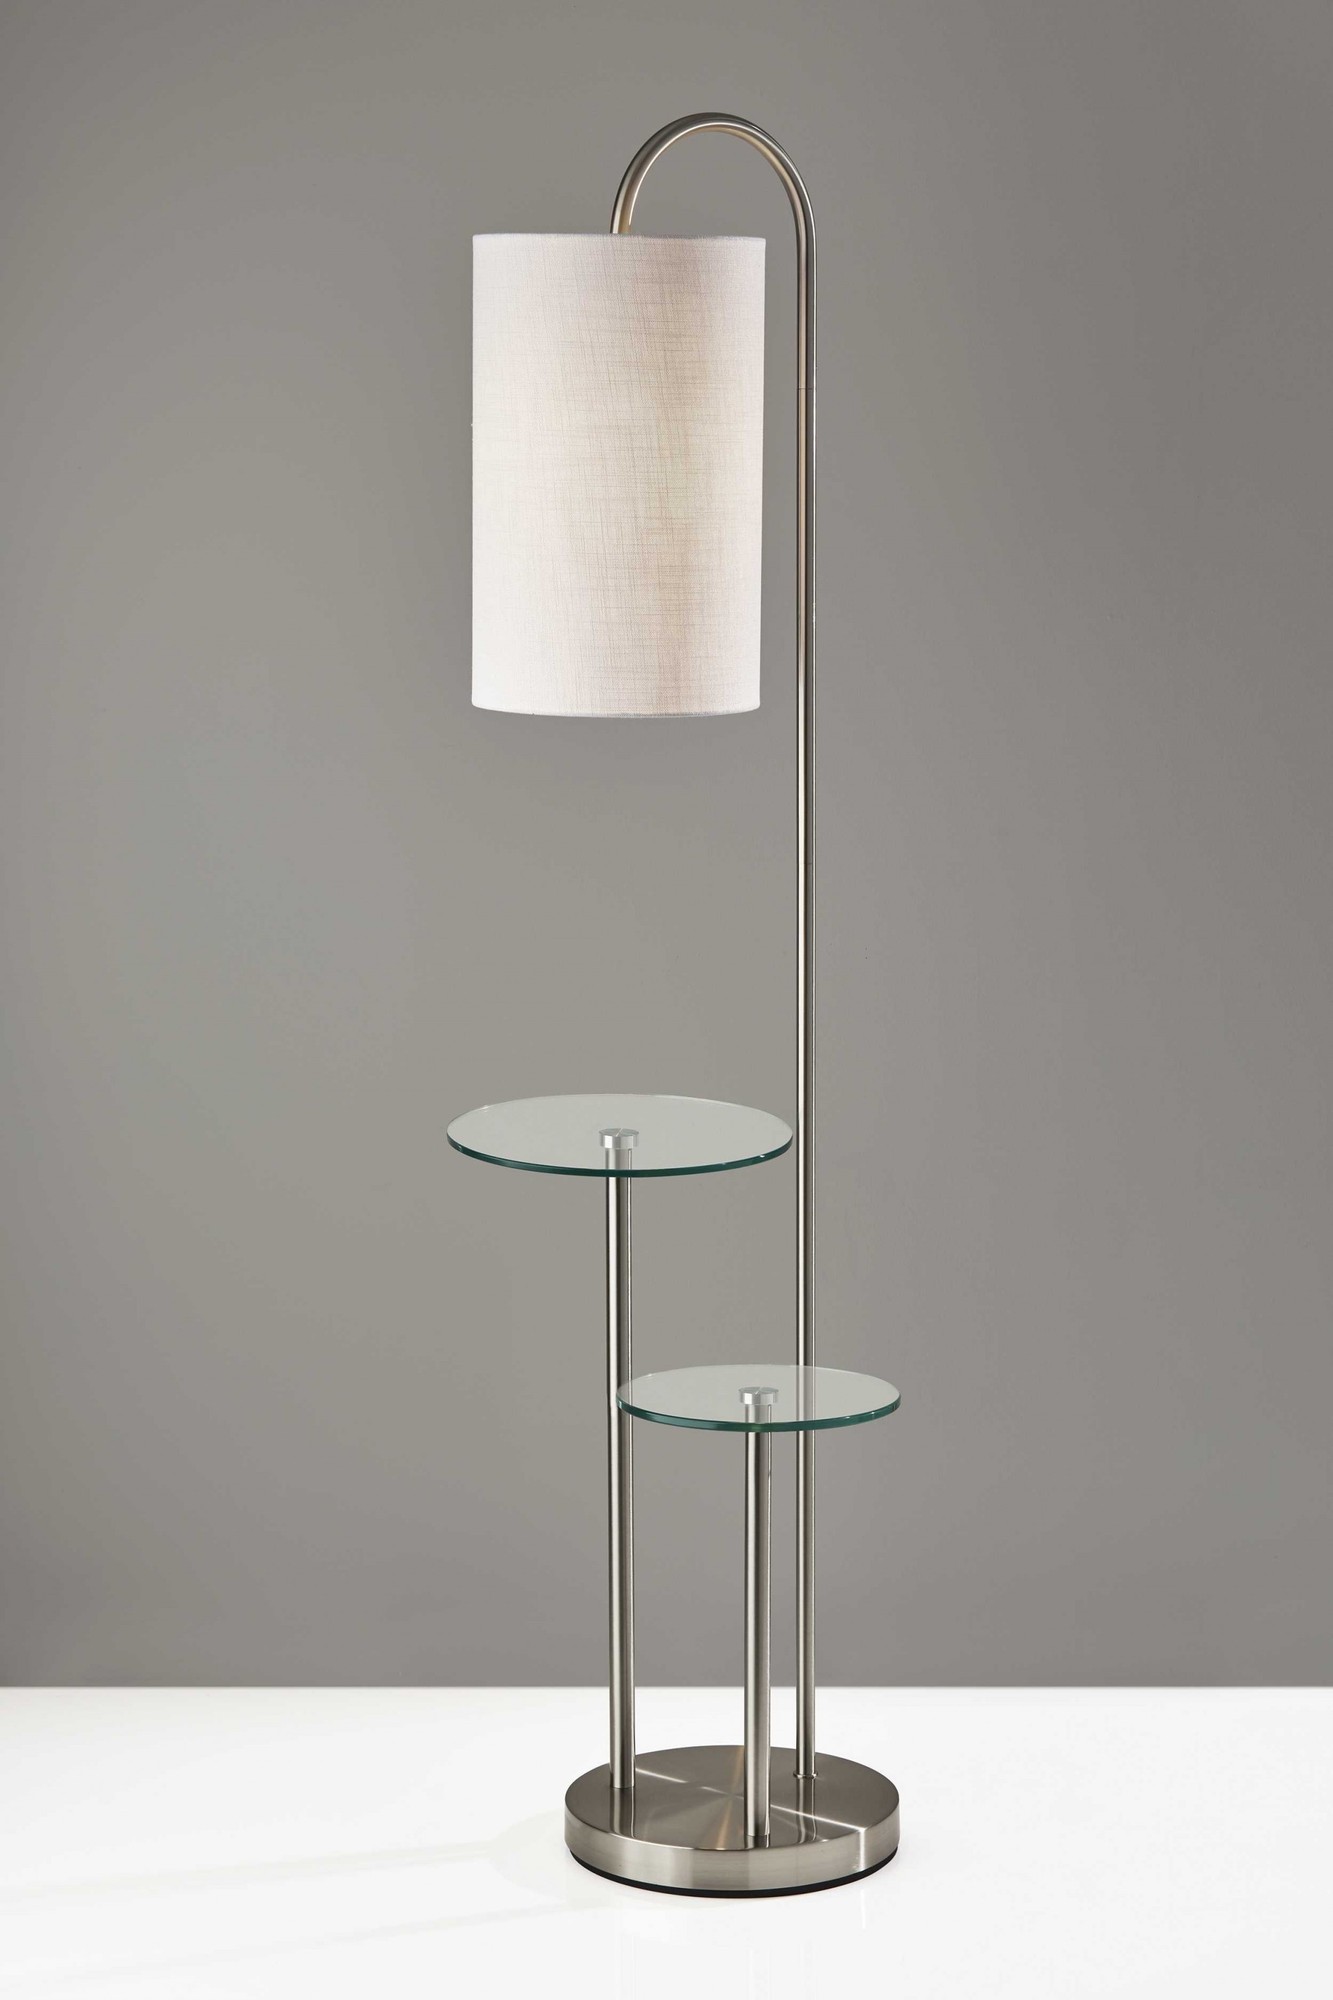 20" X 13" X 66" Brushed steel Metal Glass Shelf Floor Lamp